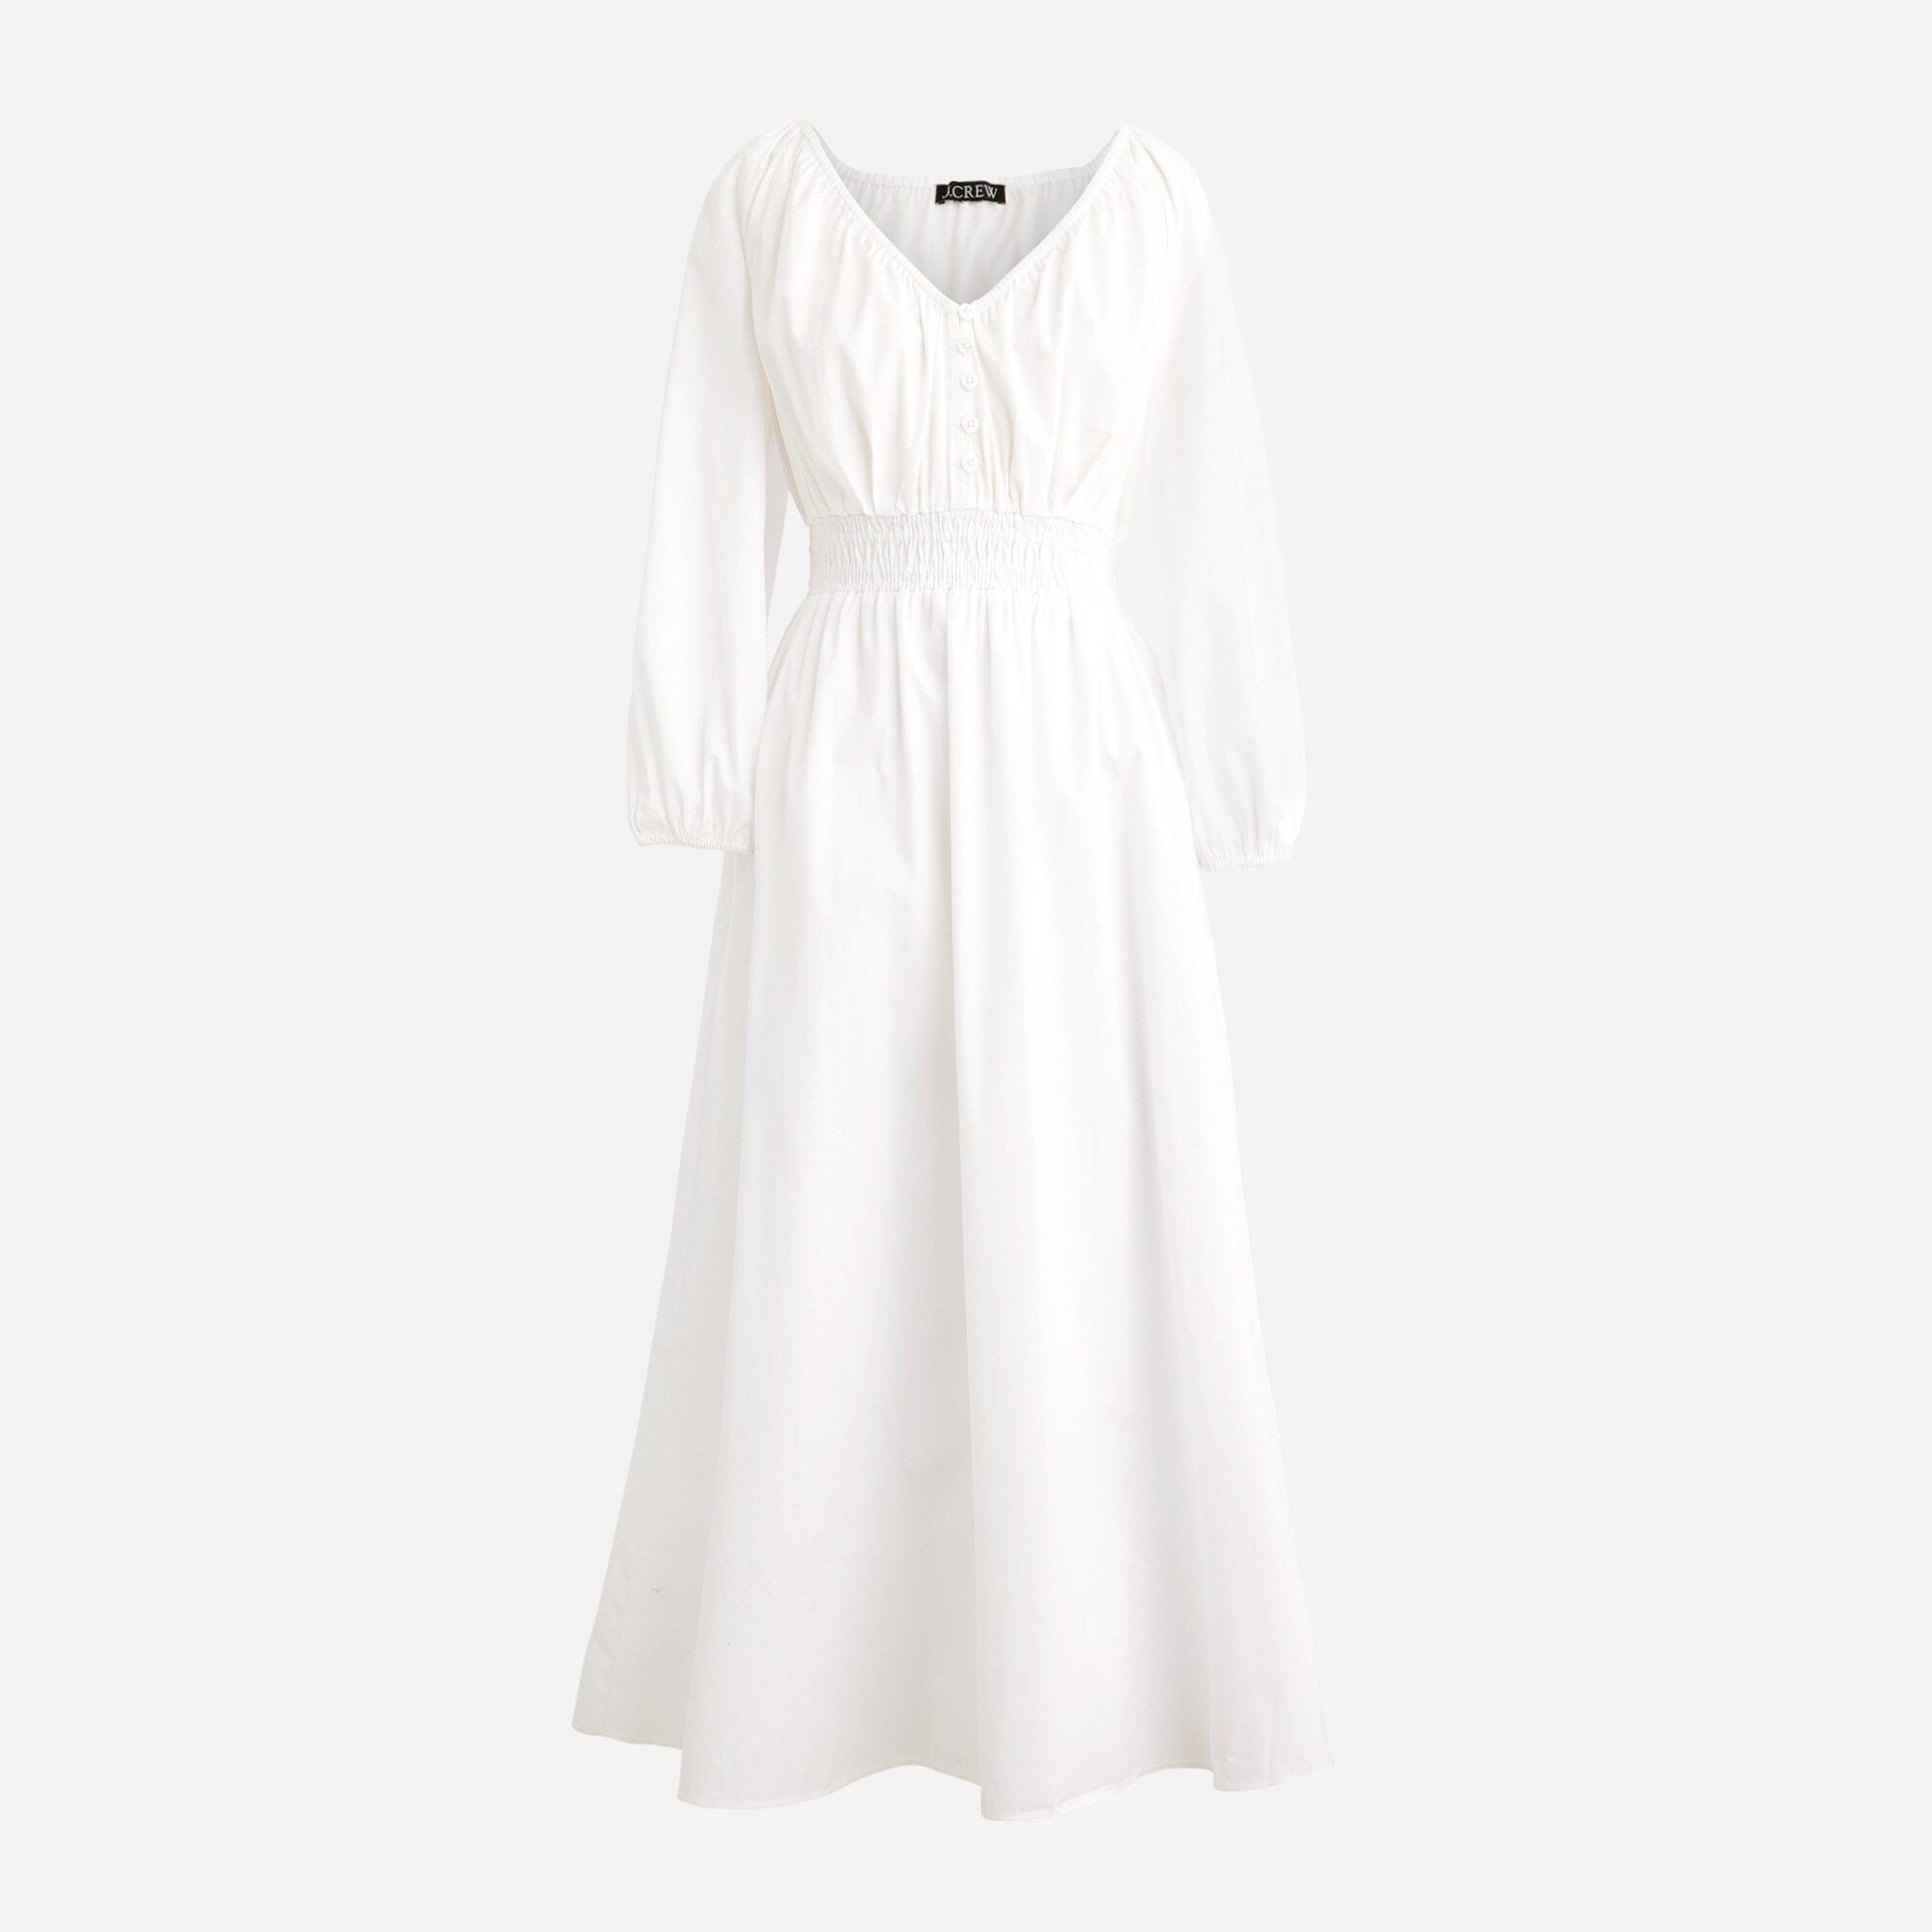  V-neck midi dress in cotton poplin